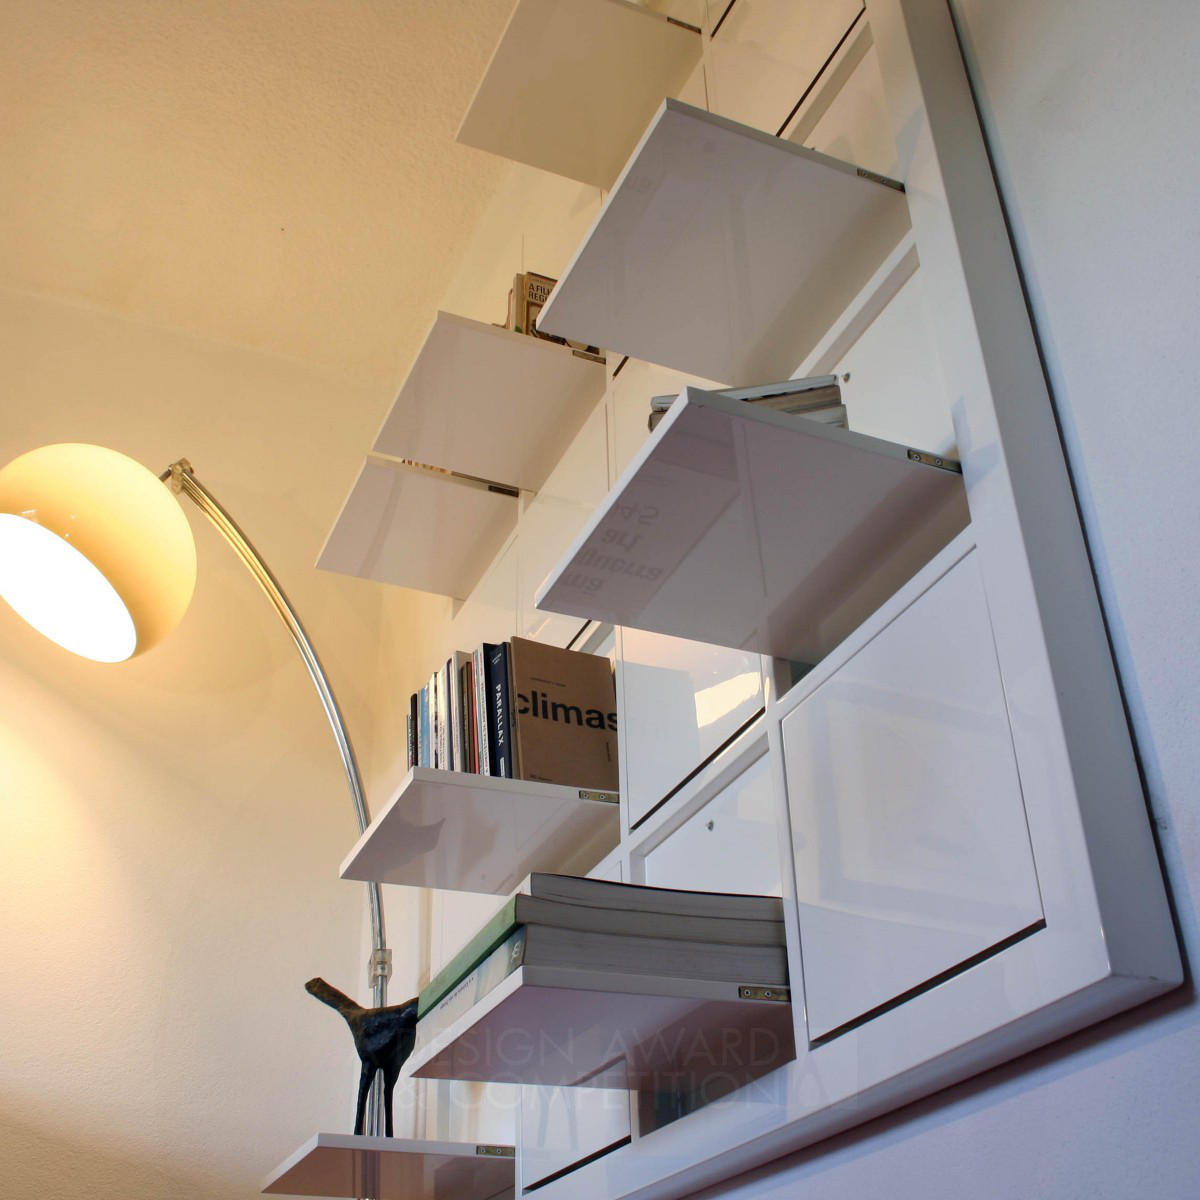 £17 bookshelves by Danilo Olim